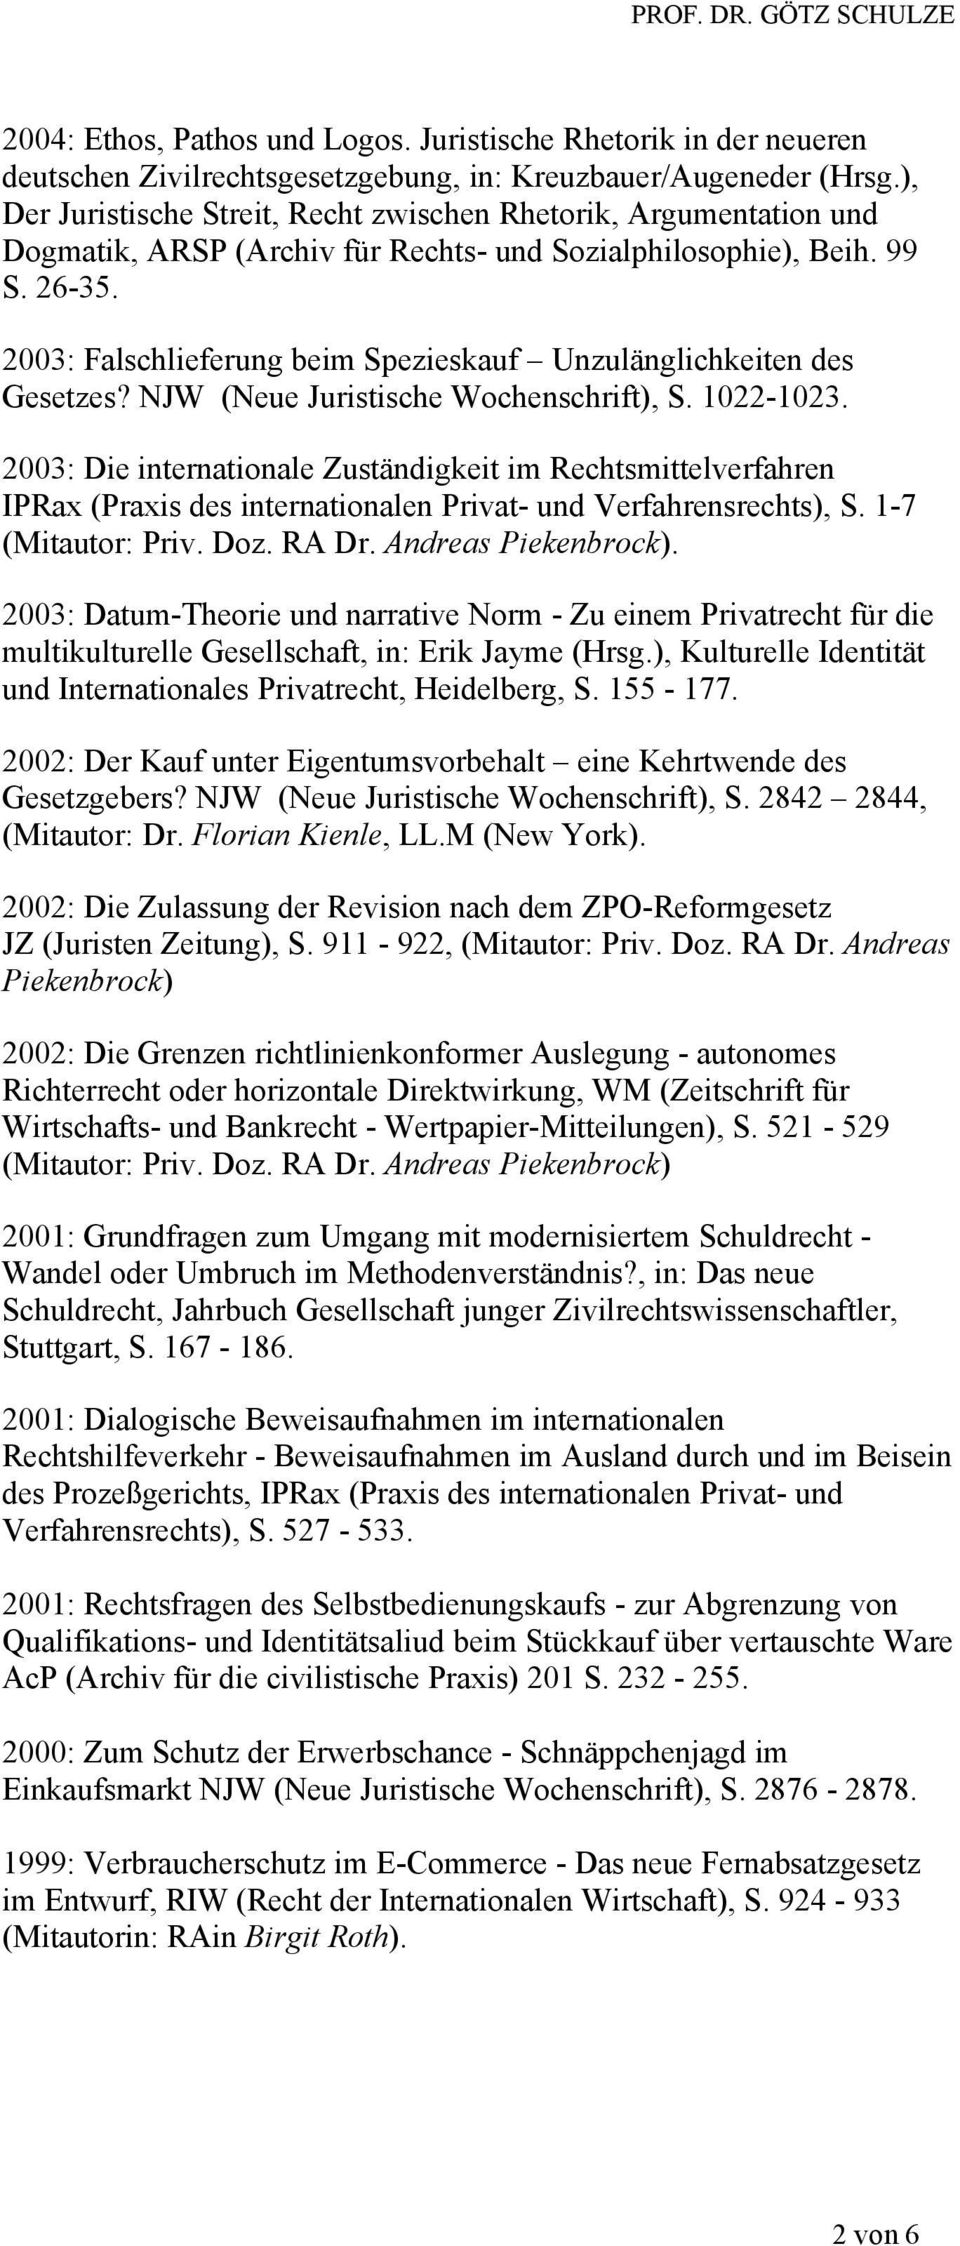 2003: Falschlieferung beim Spezieskauf Unzulänglichkeiten des Gesetzes? NJW (Neue Juristische Wochenschrift), S. 1022-1023.